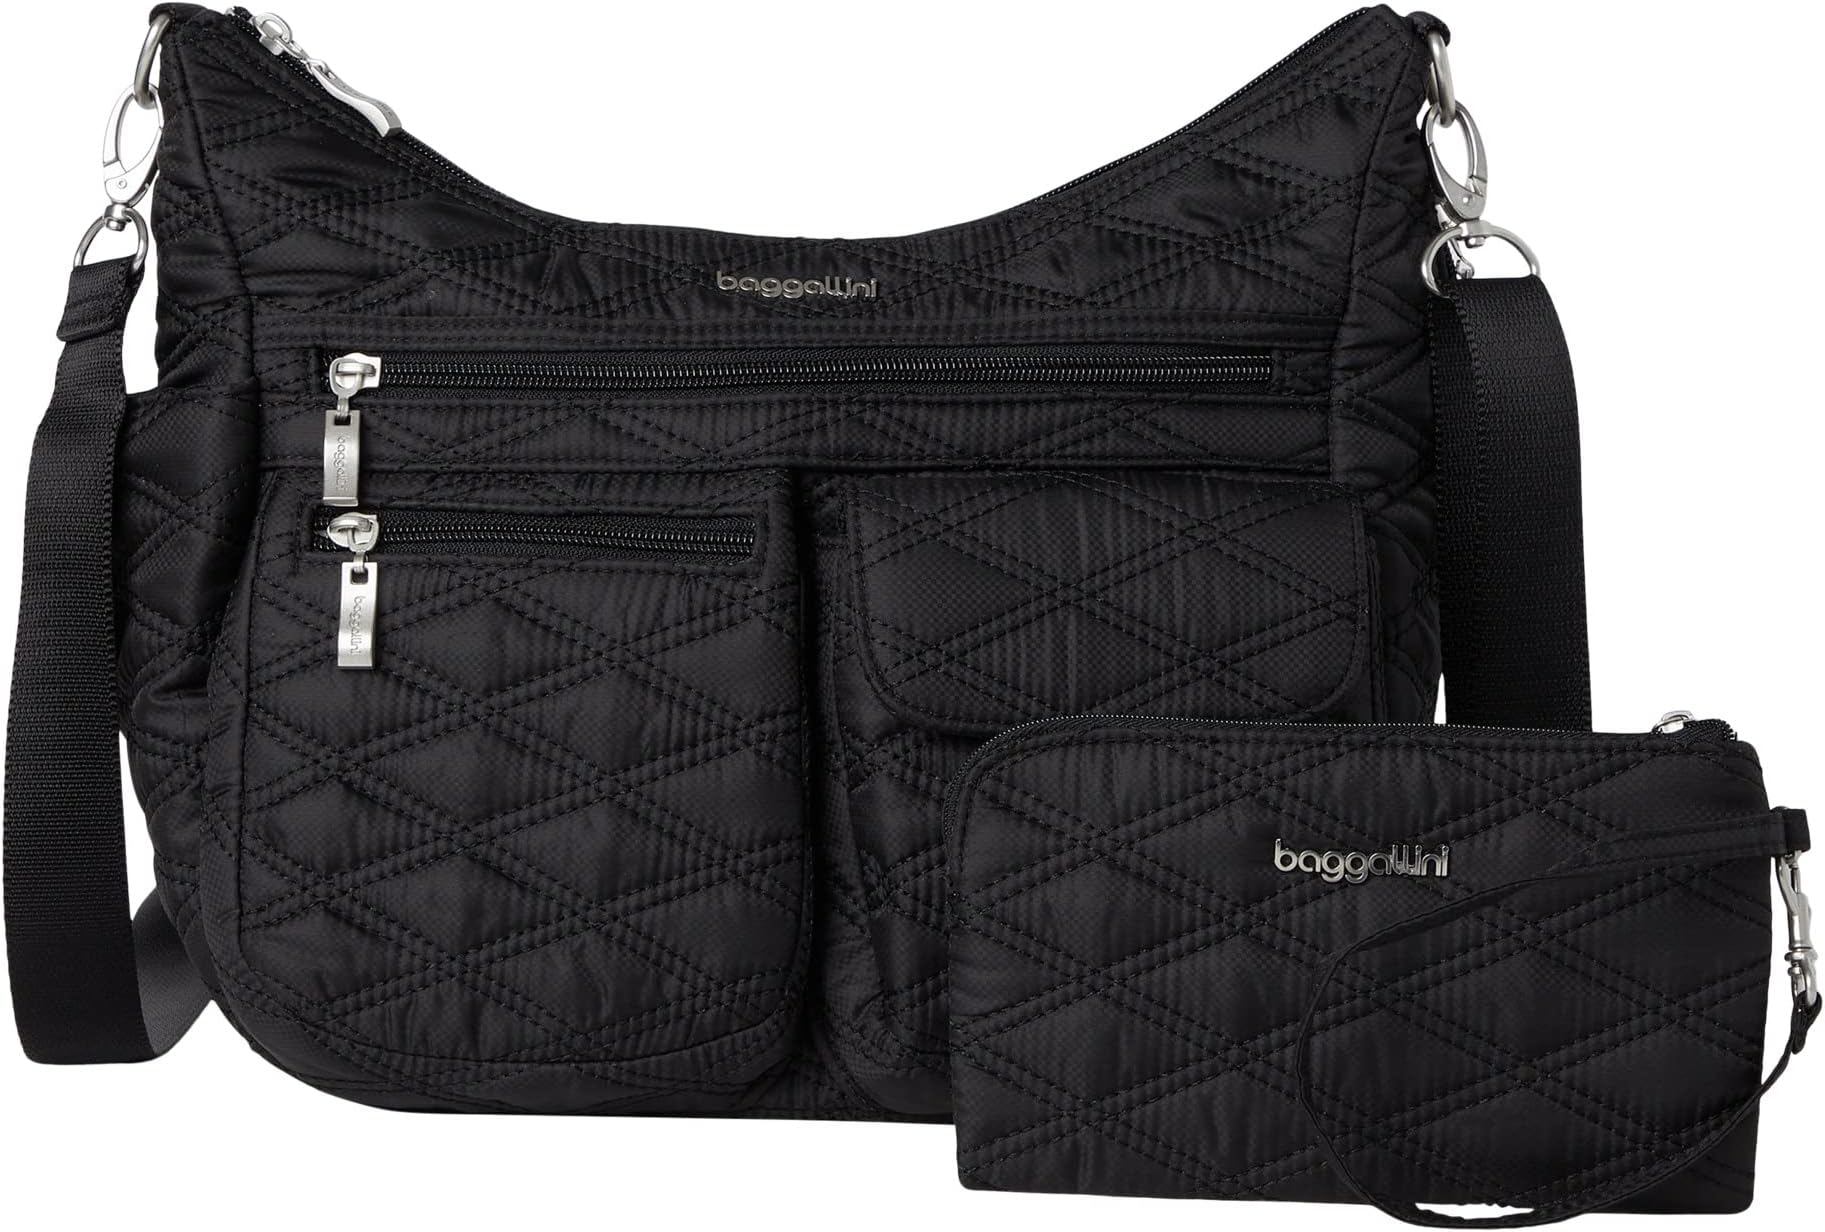 Современная универсальная сумка Baggallini, цвет Black Quilt